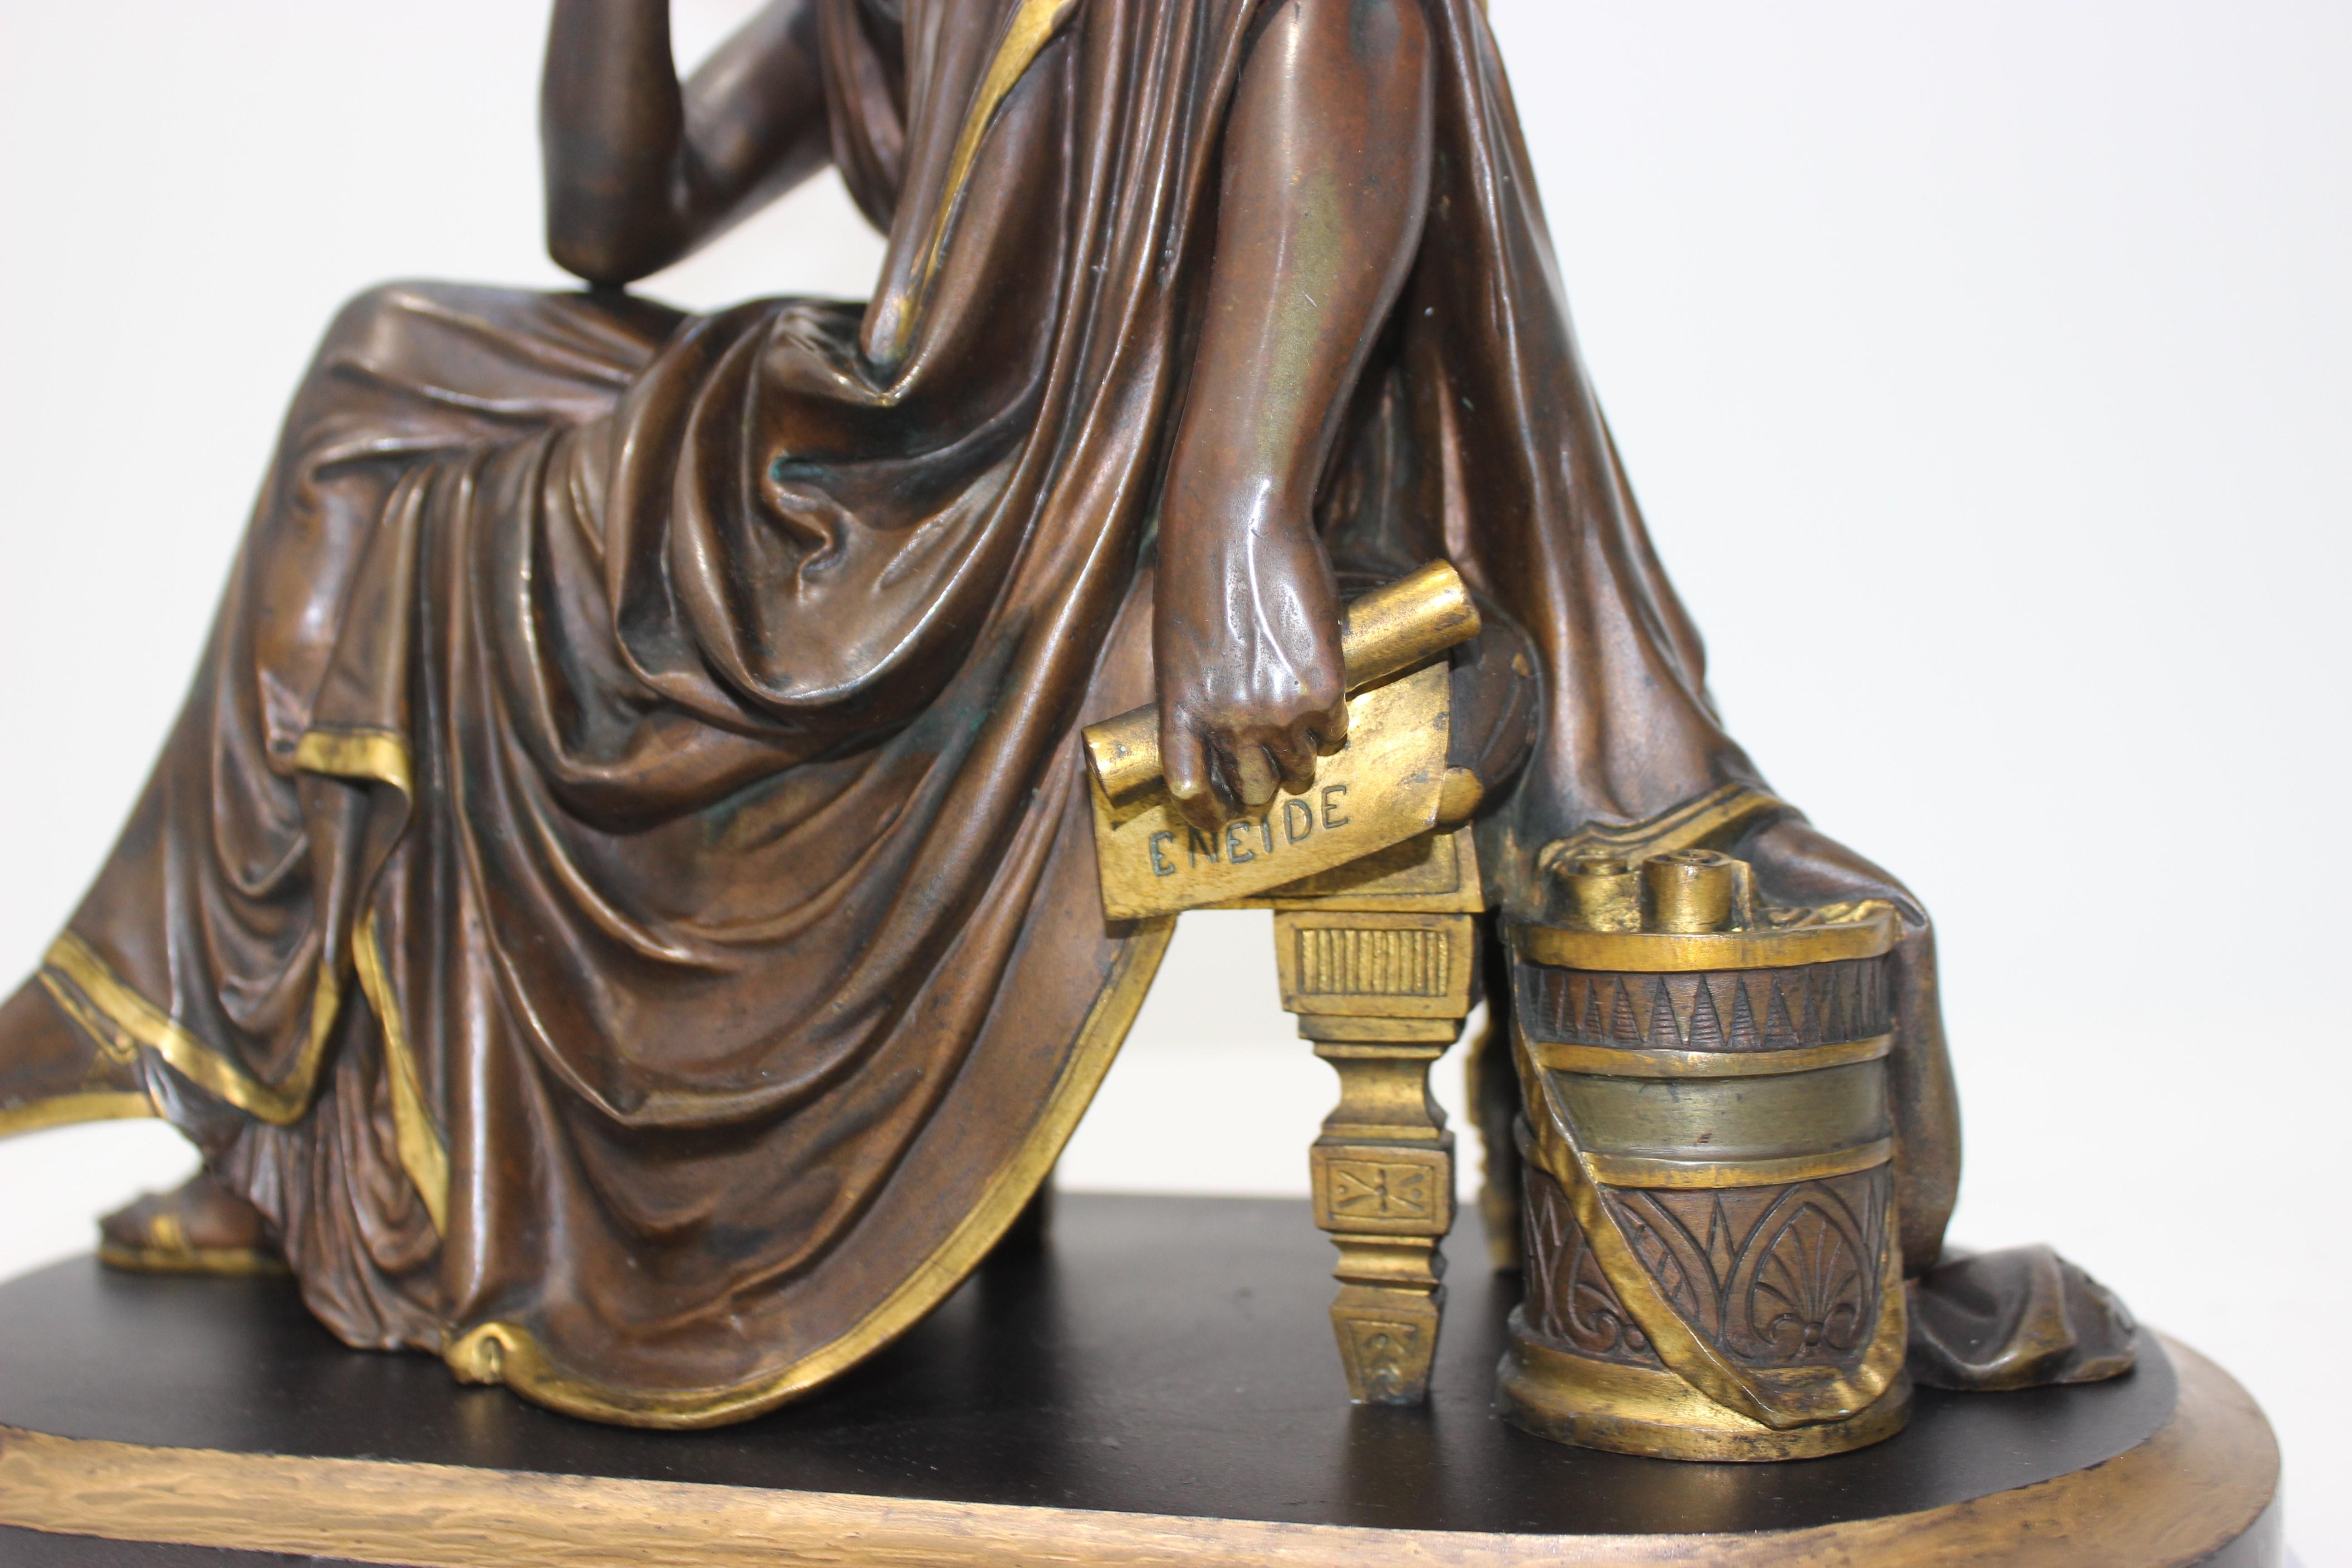 Diese Grand-Tour-Bronze aus dem 19. Jahrhundert stellt den römischen Dichter Virgil in Kontemplation dar und stammt von dem Bildhauer Albert-Ernest Carrier-Belleuse.

Hinweis: Die Skulptur ist vom Sockel getrennt.

Hinweis: Der Sockel ist aus